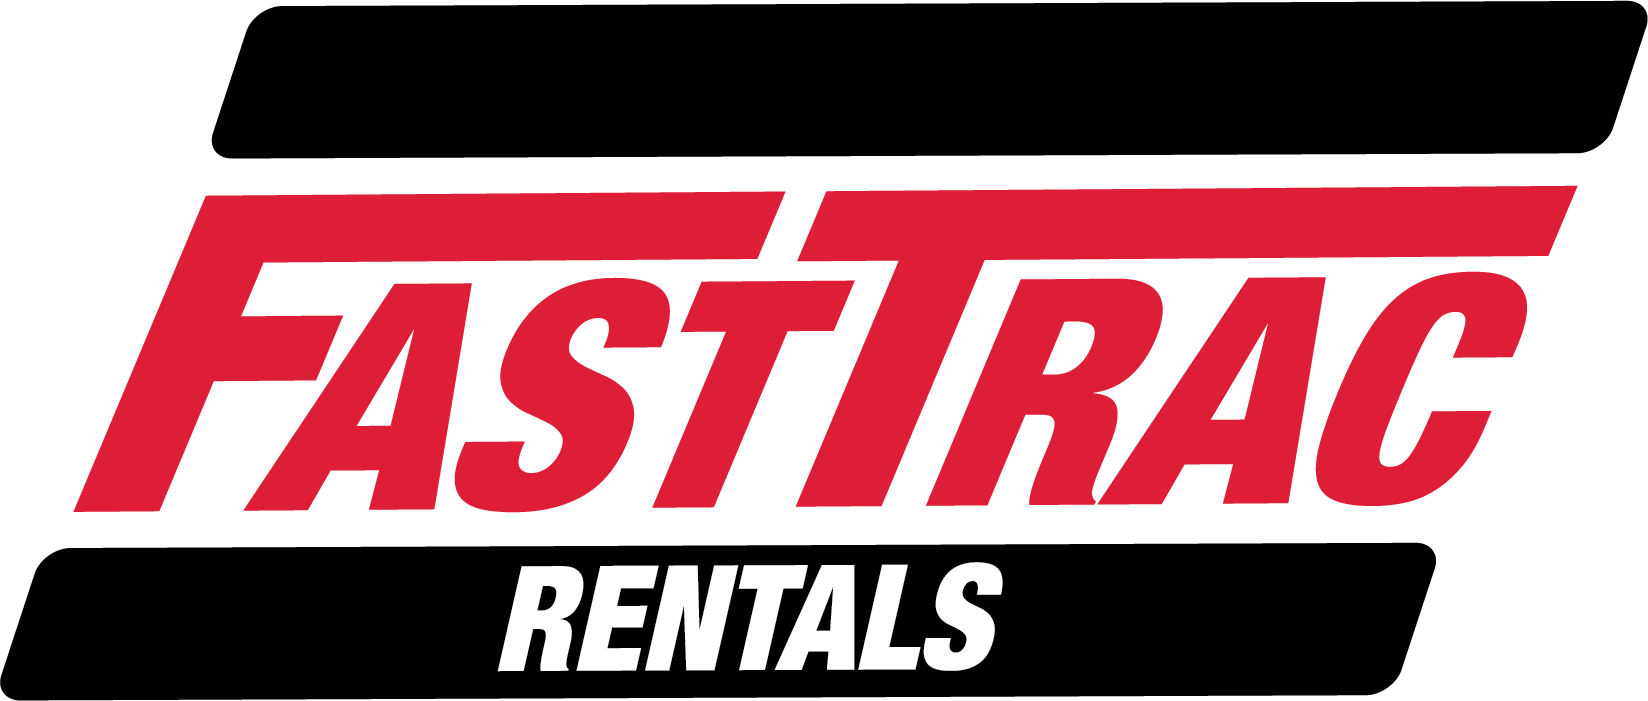 FastTrac Rentals